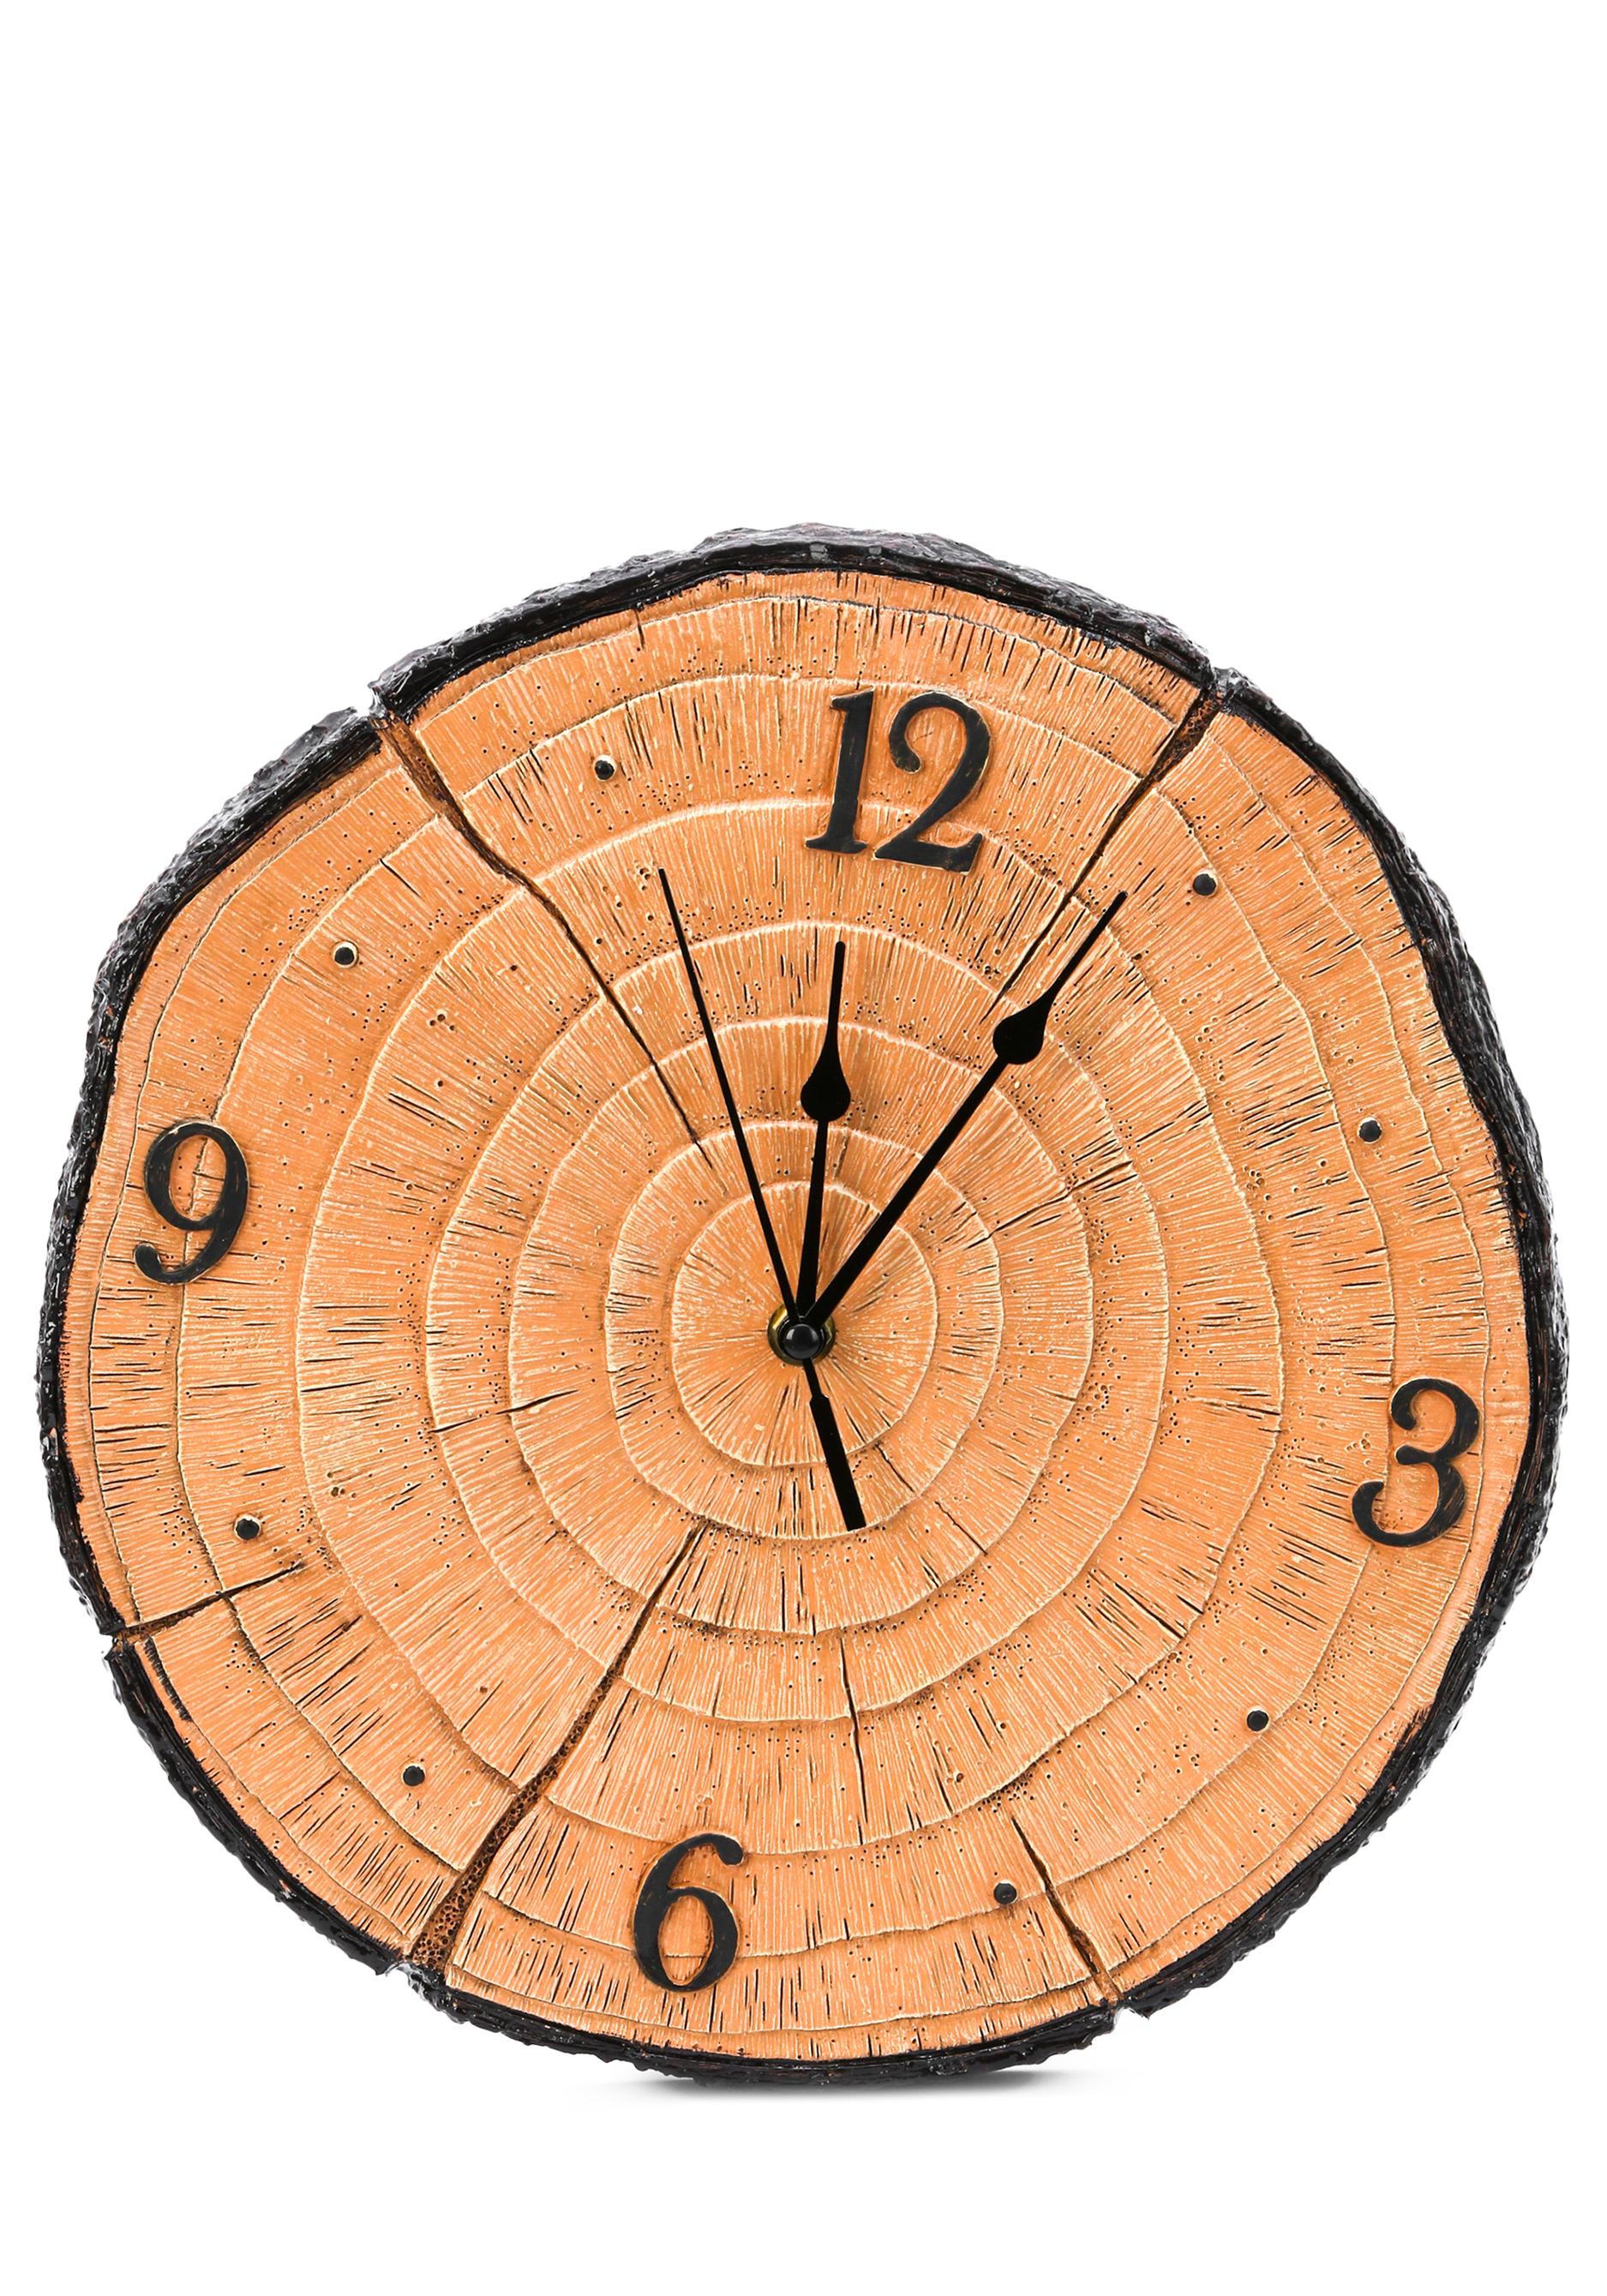 Часы настенные бесшумные часы в шкатулке f s m h d с принтом uk 15x16x10 см